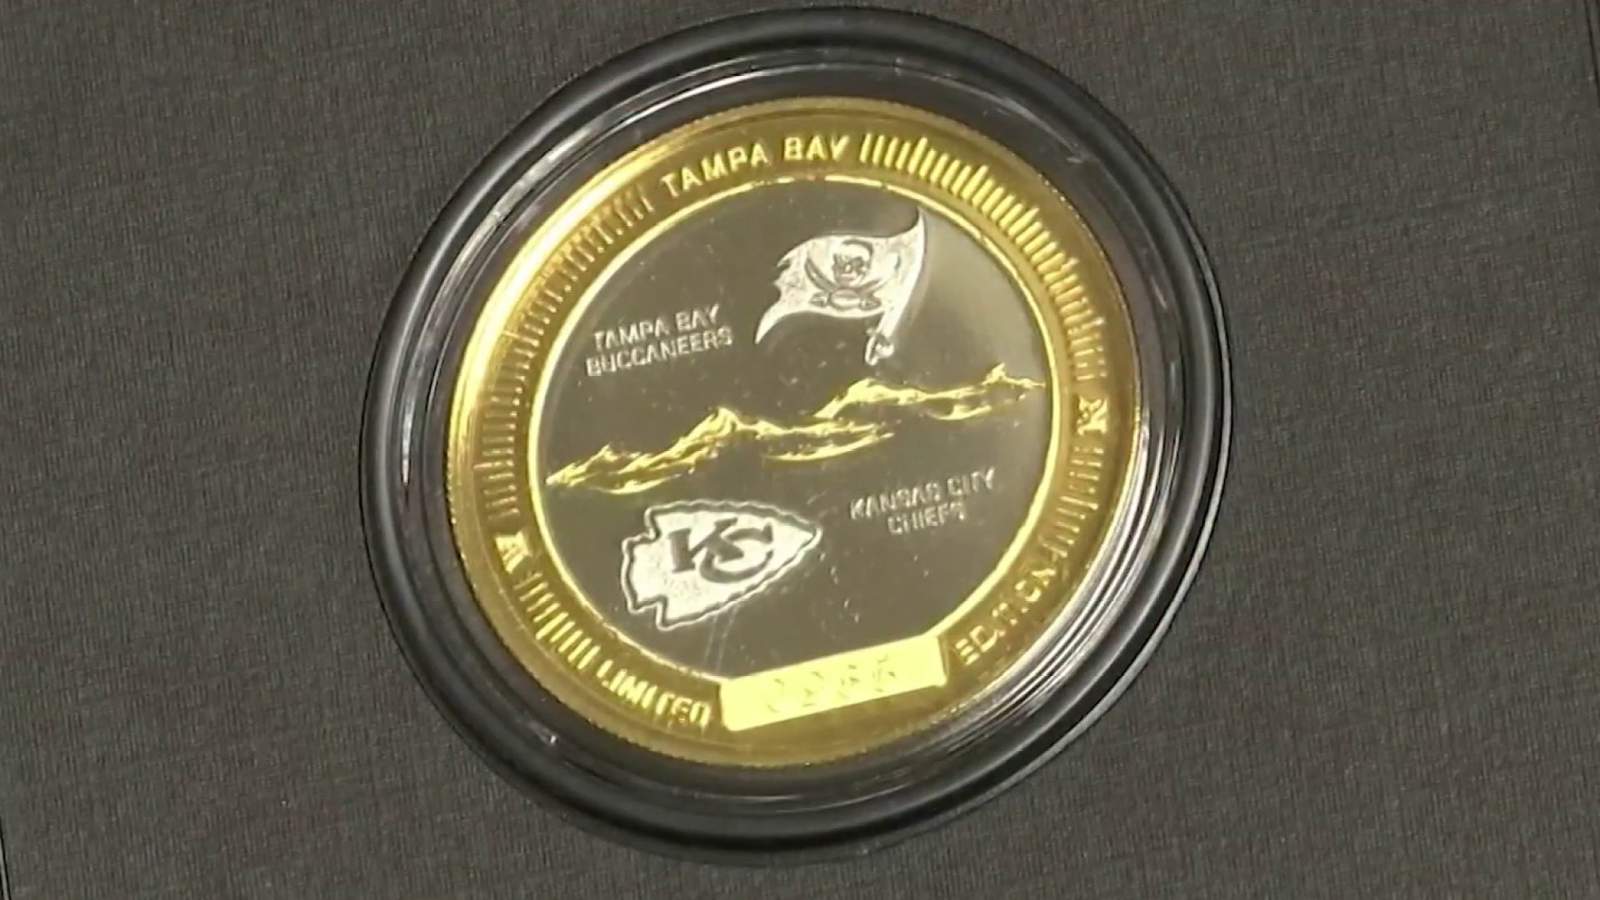 Florida sports memorabilia facility makes official Super Bowl coin for